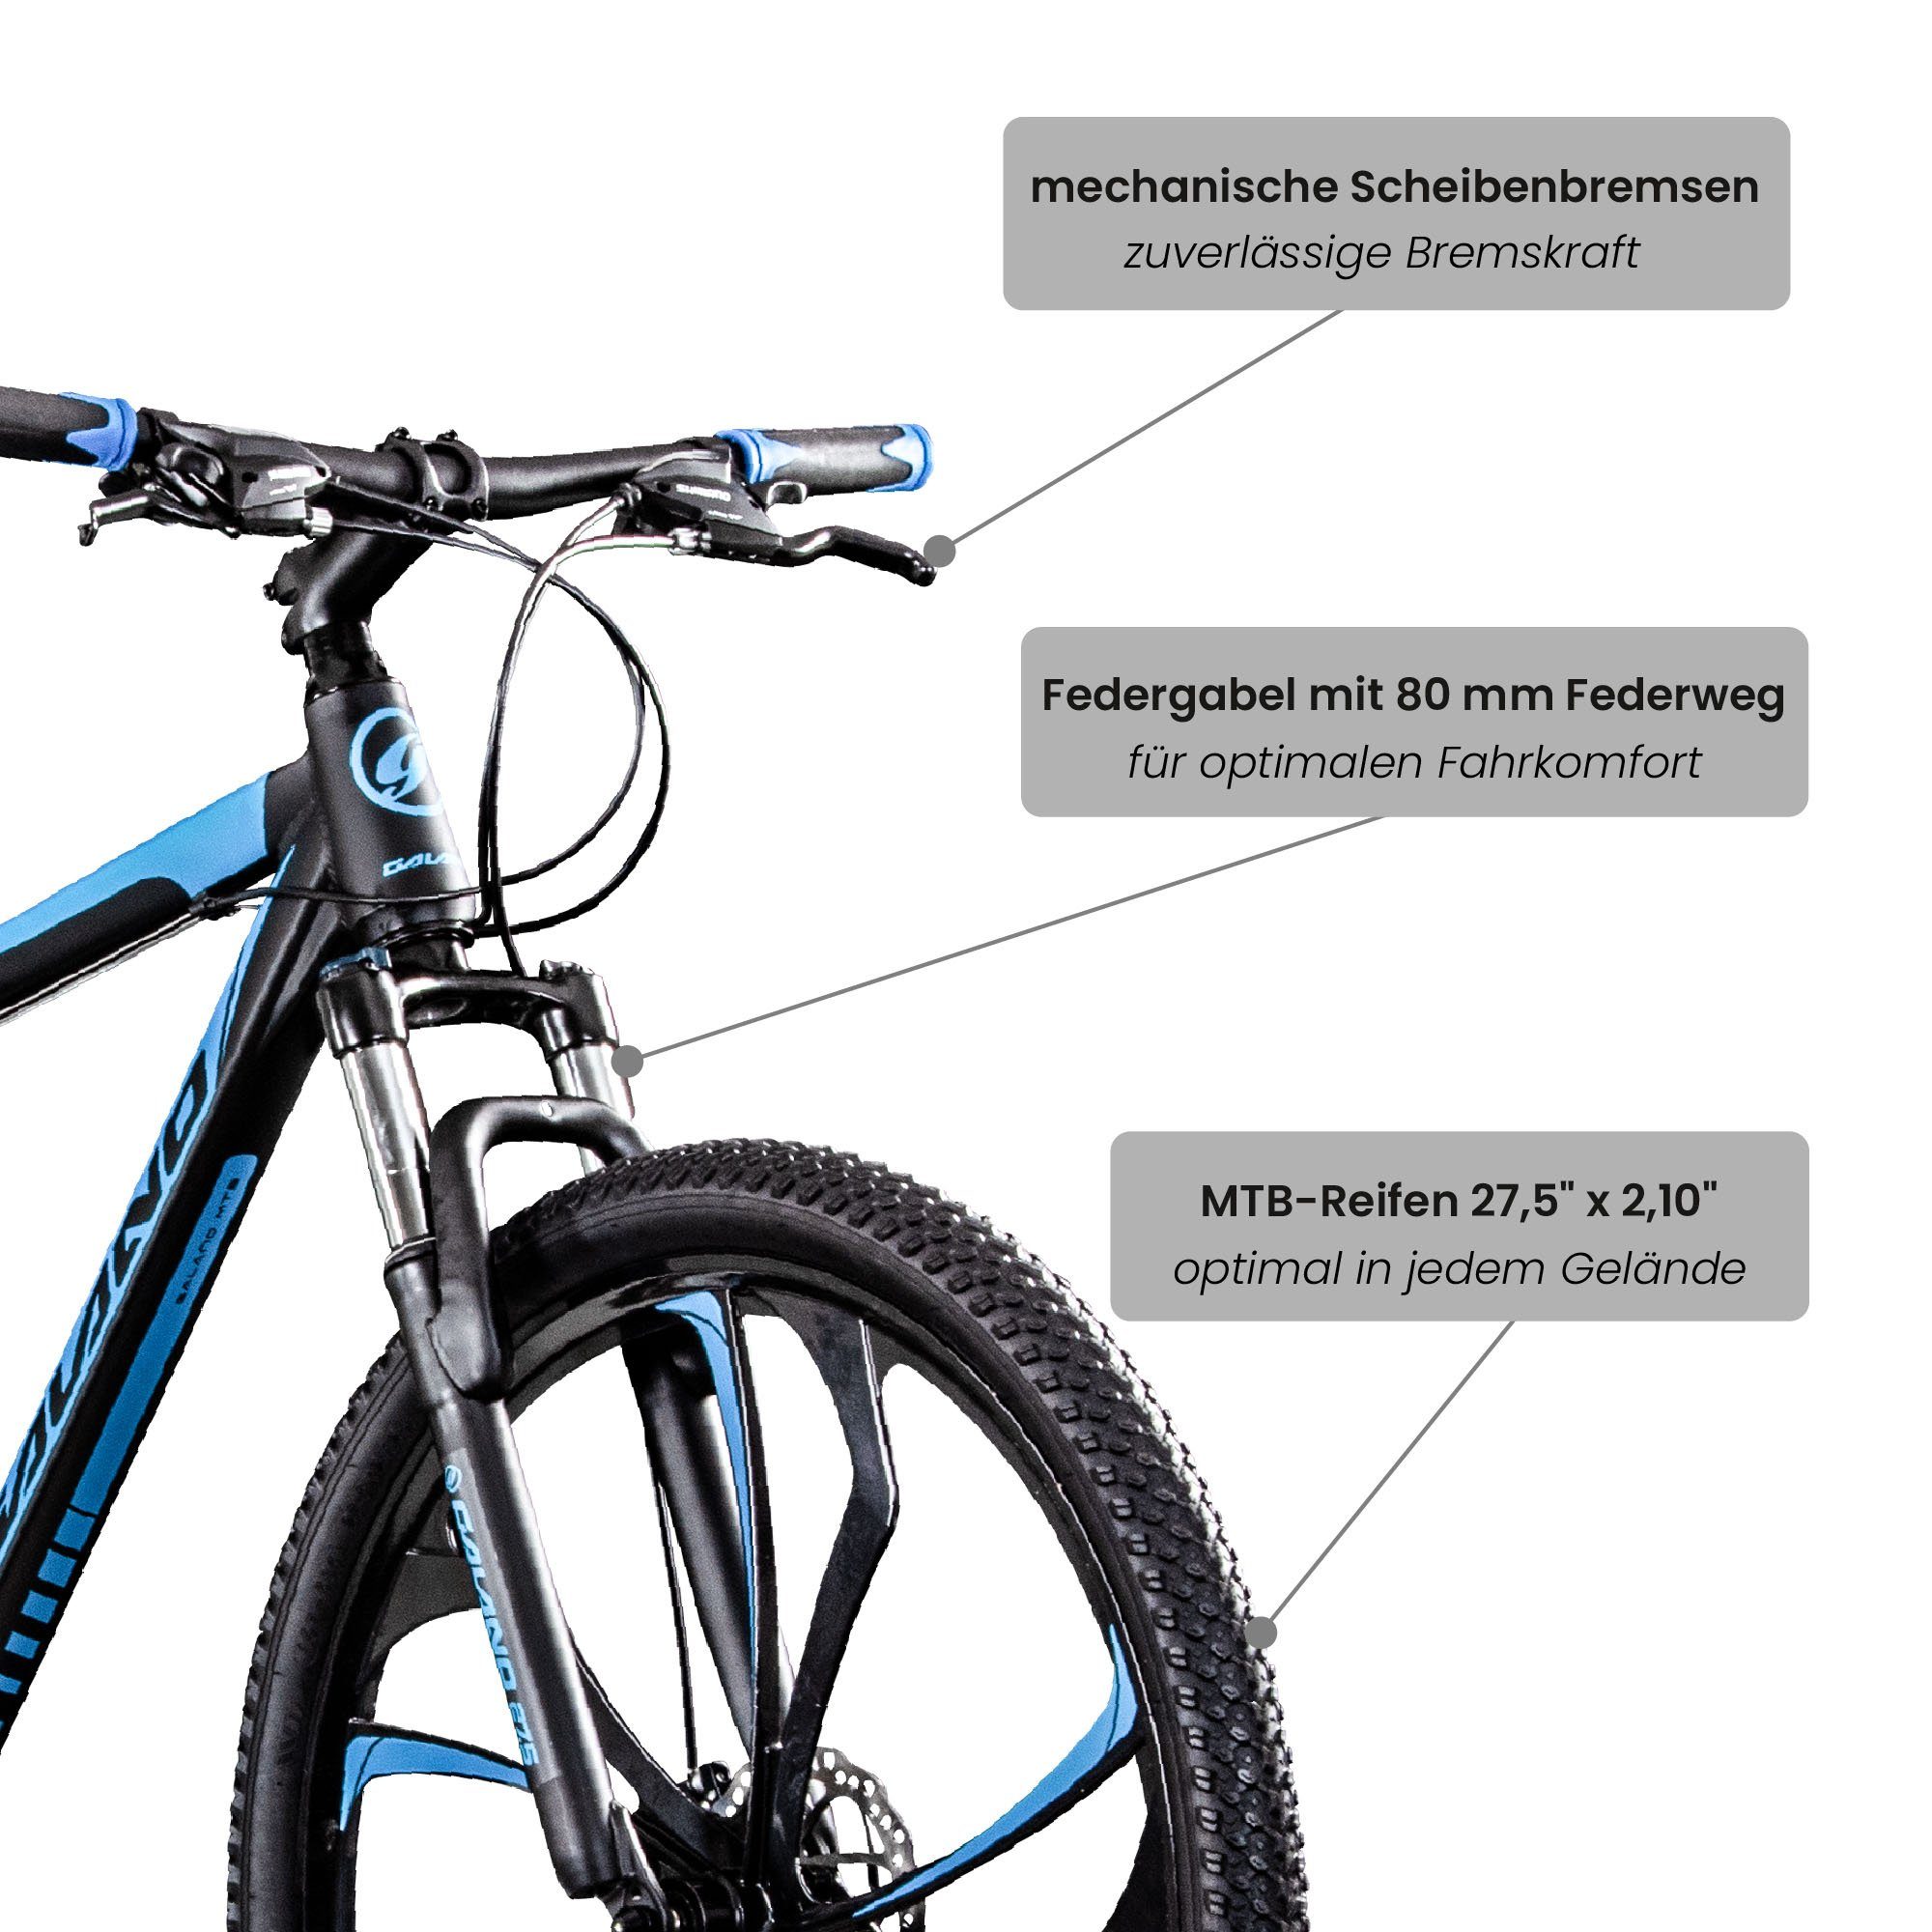 165-185cm und 24 Mountainbike Kettenschaltung, Mountainbike Primal, Gang, Galano schwarz/blau Hardtail Fahrrad Erwachsene MTB Jugendliche